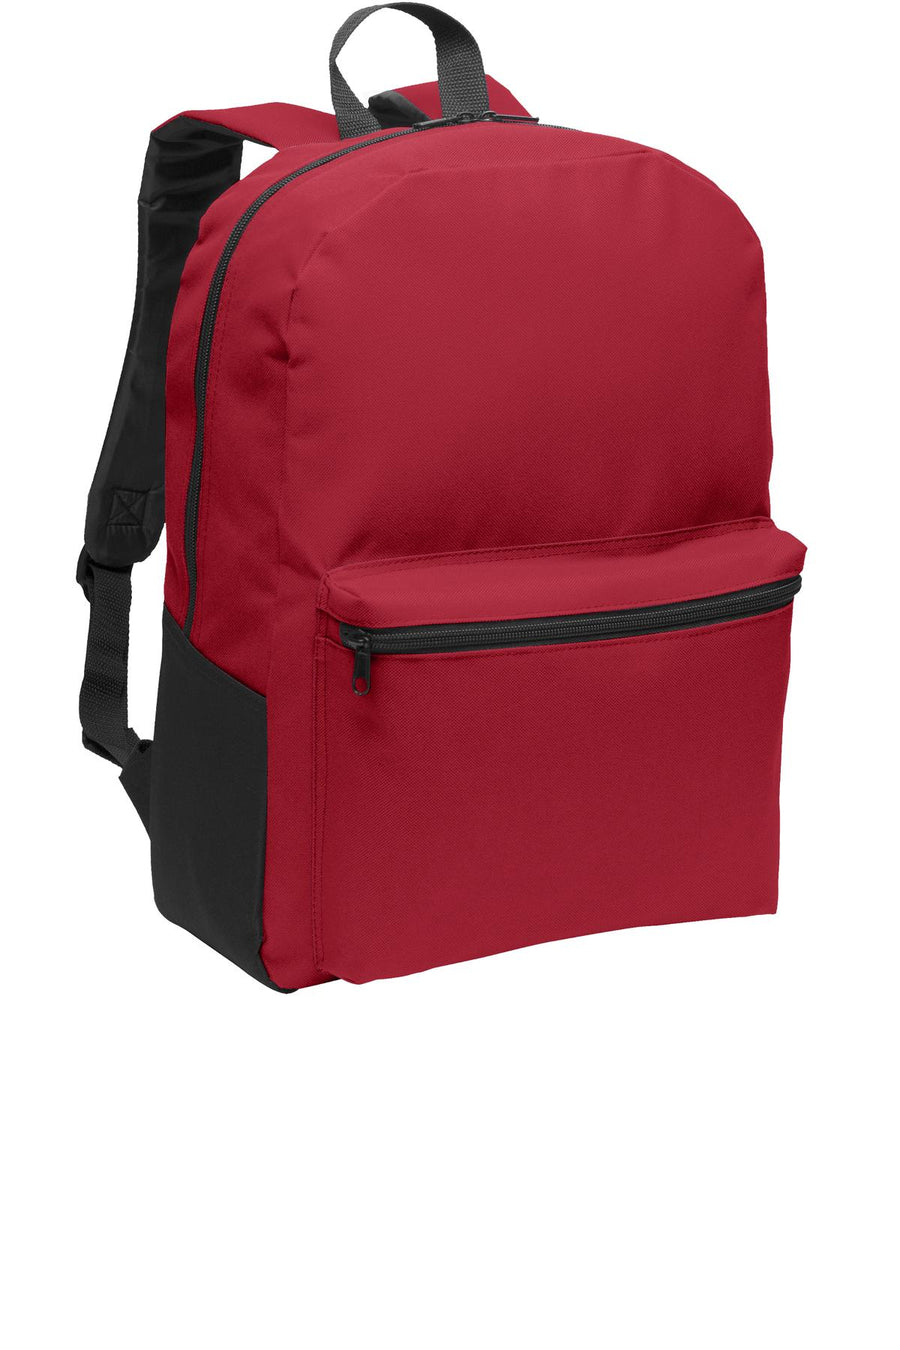 Port Authority¬Æ Value Backpack. BG203